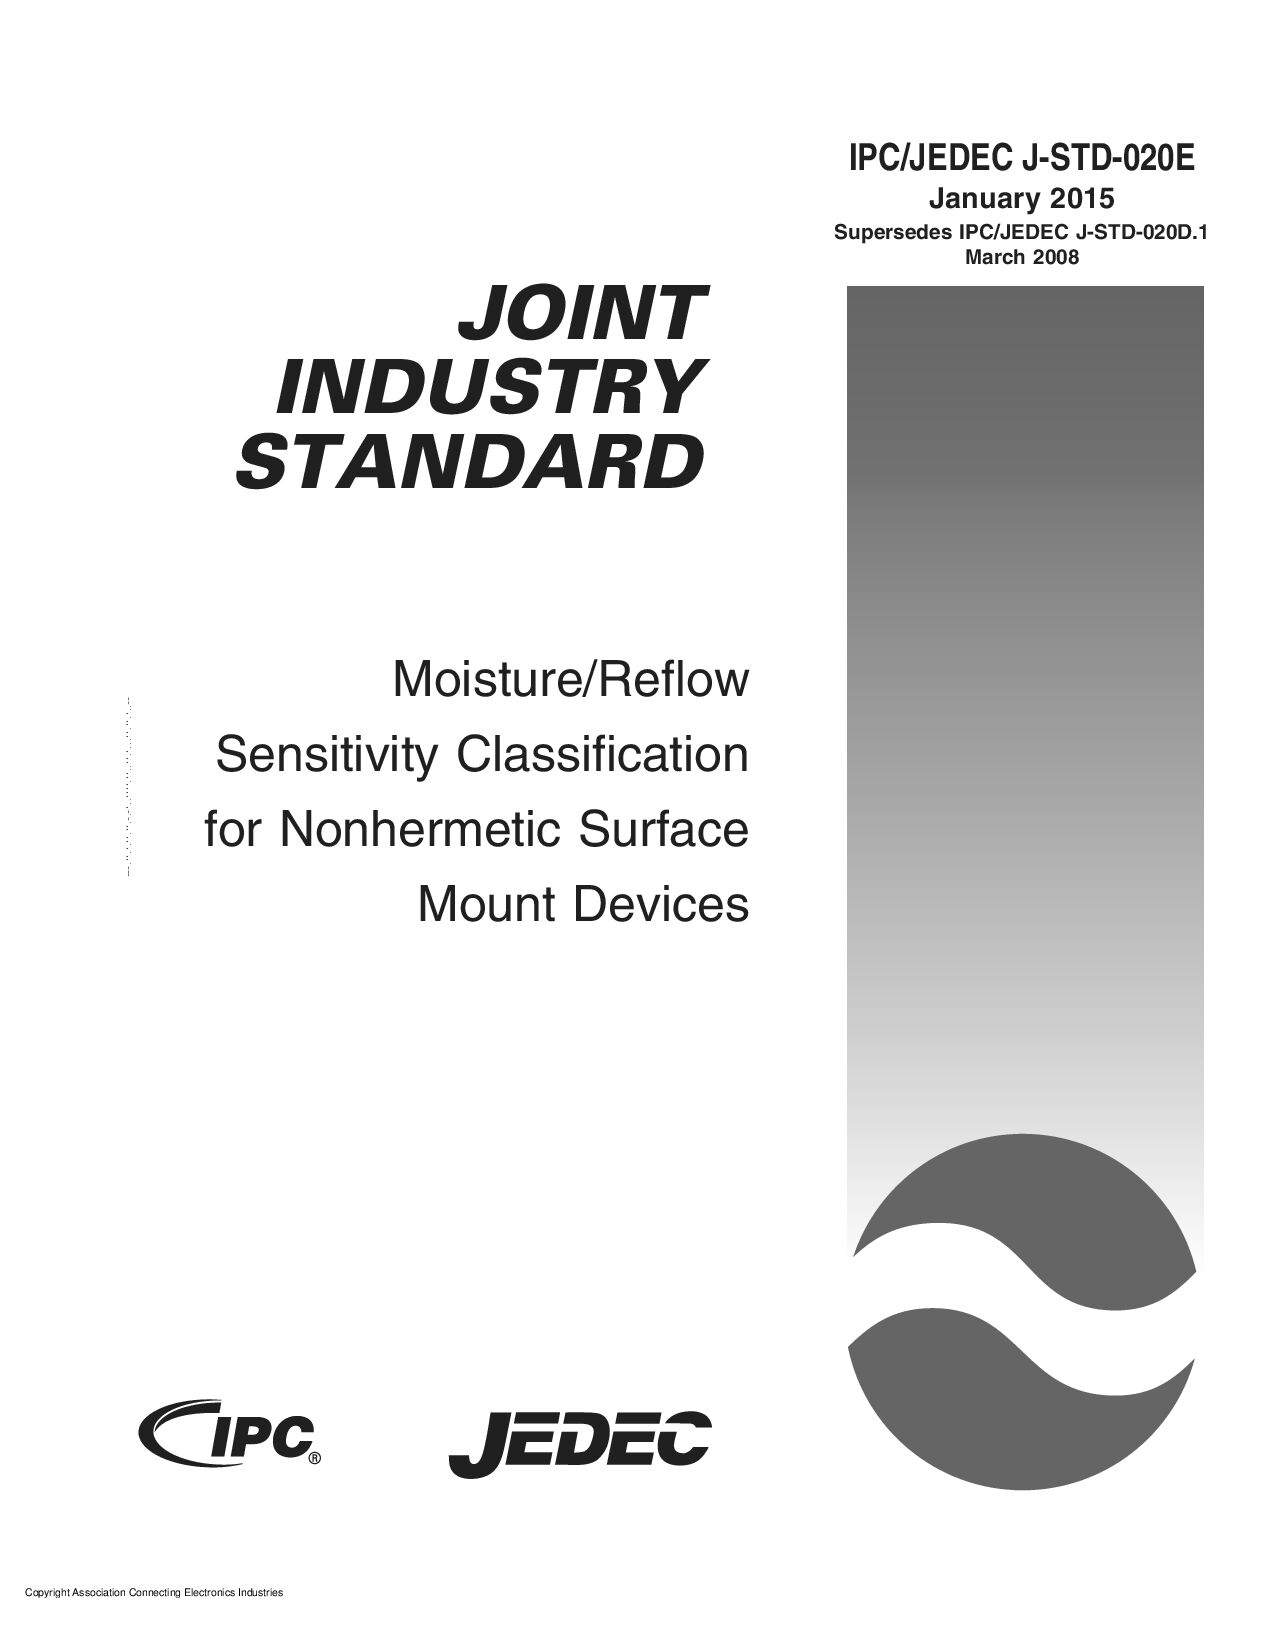 IPC JEDEC J-STD-020E